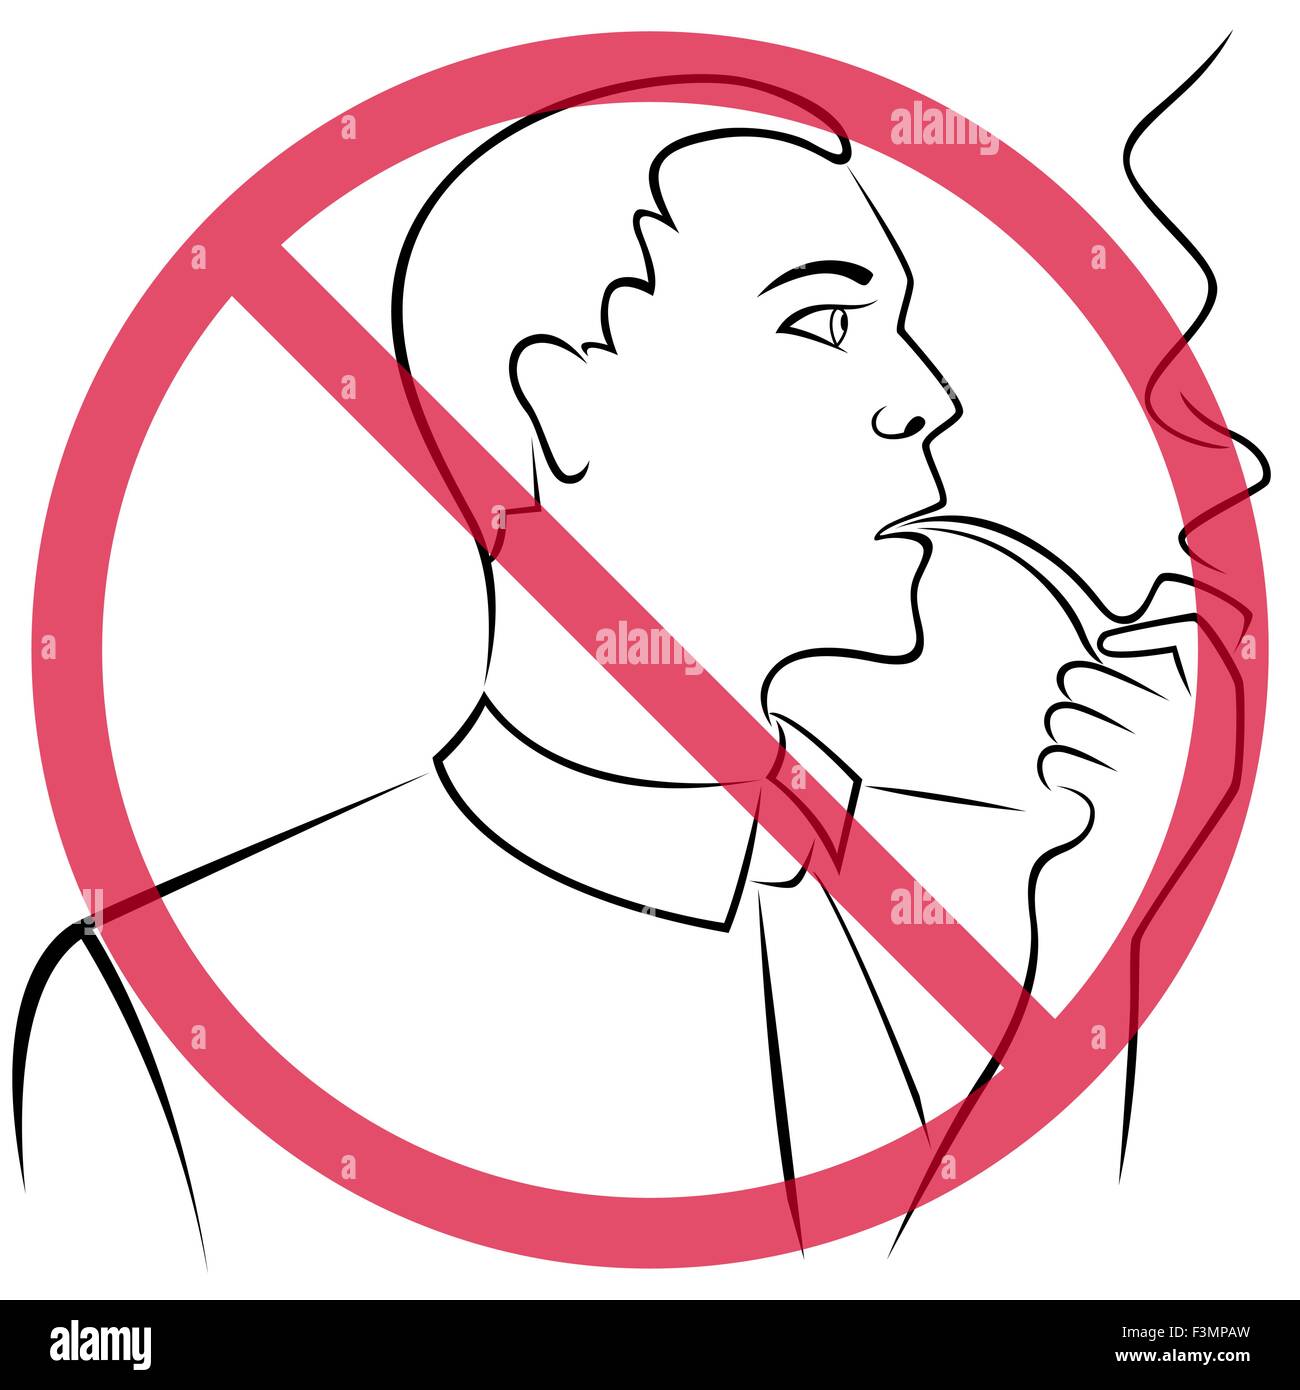 Mann, der eine Pfeife raucht durchgestrichen roten runden Verbotszeichen Handzeichnung Vektor Gliederung Stock Vektor